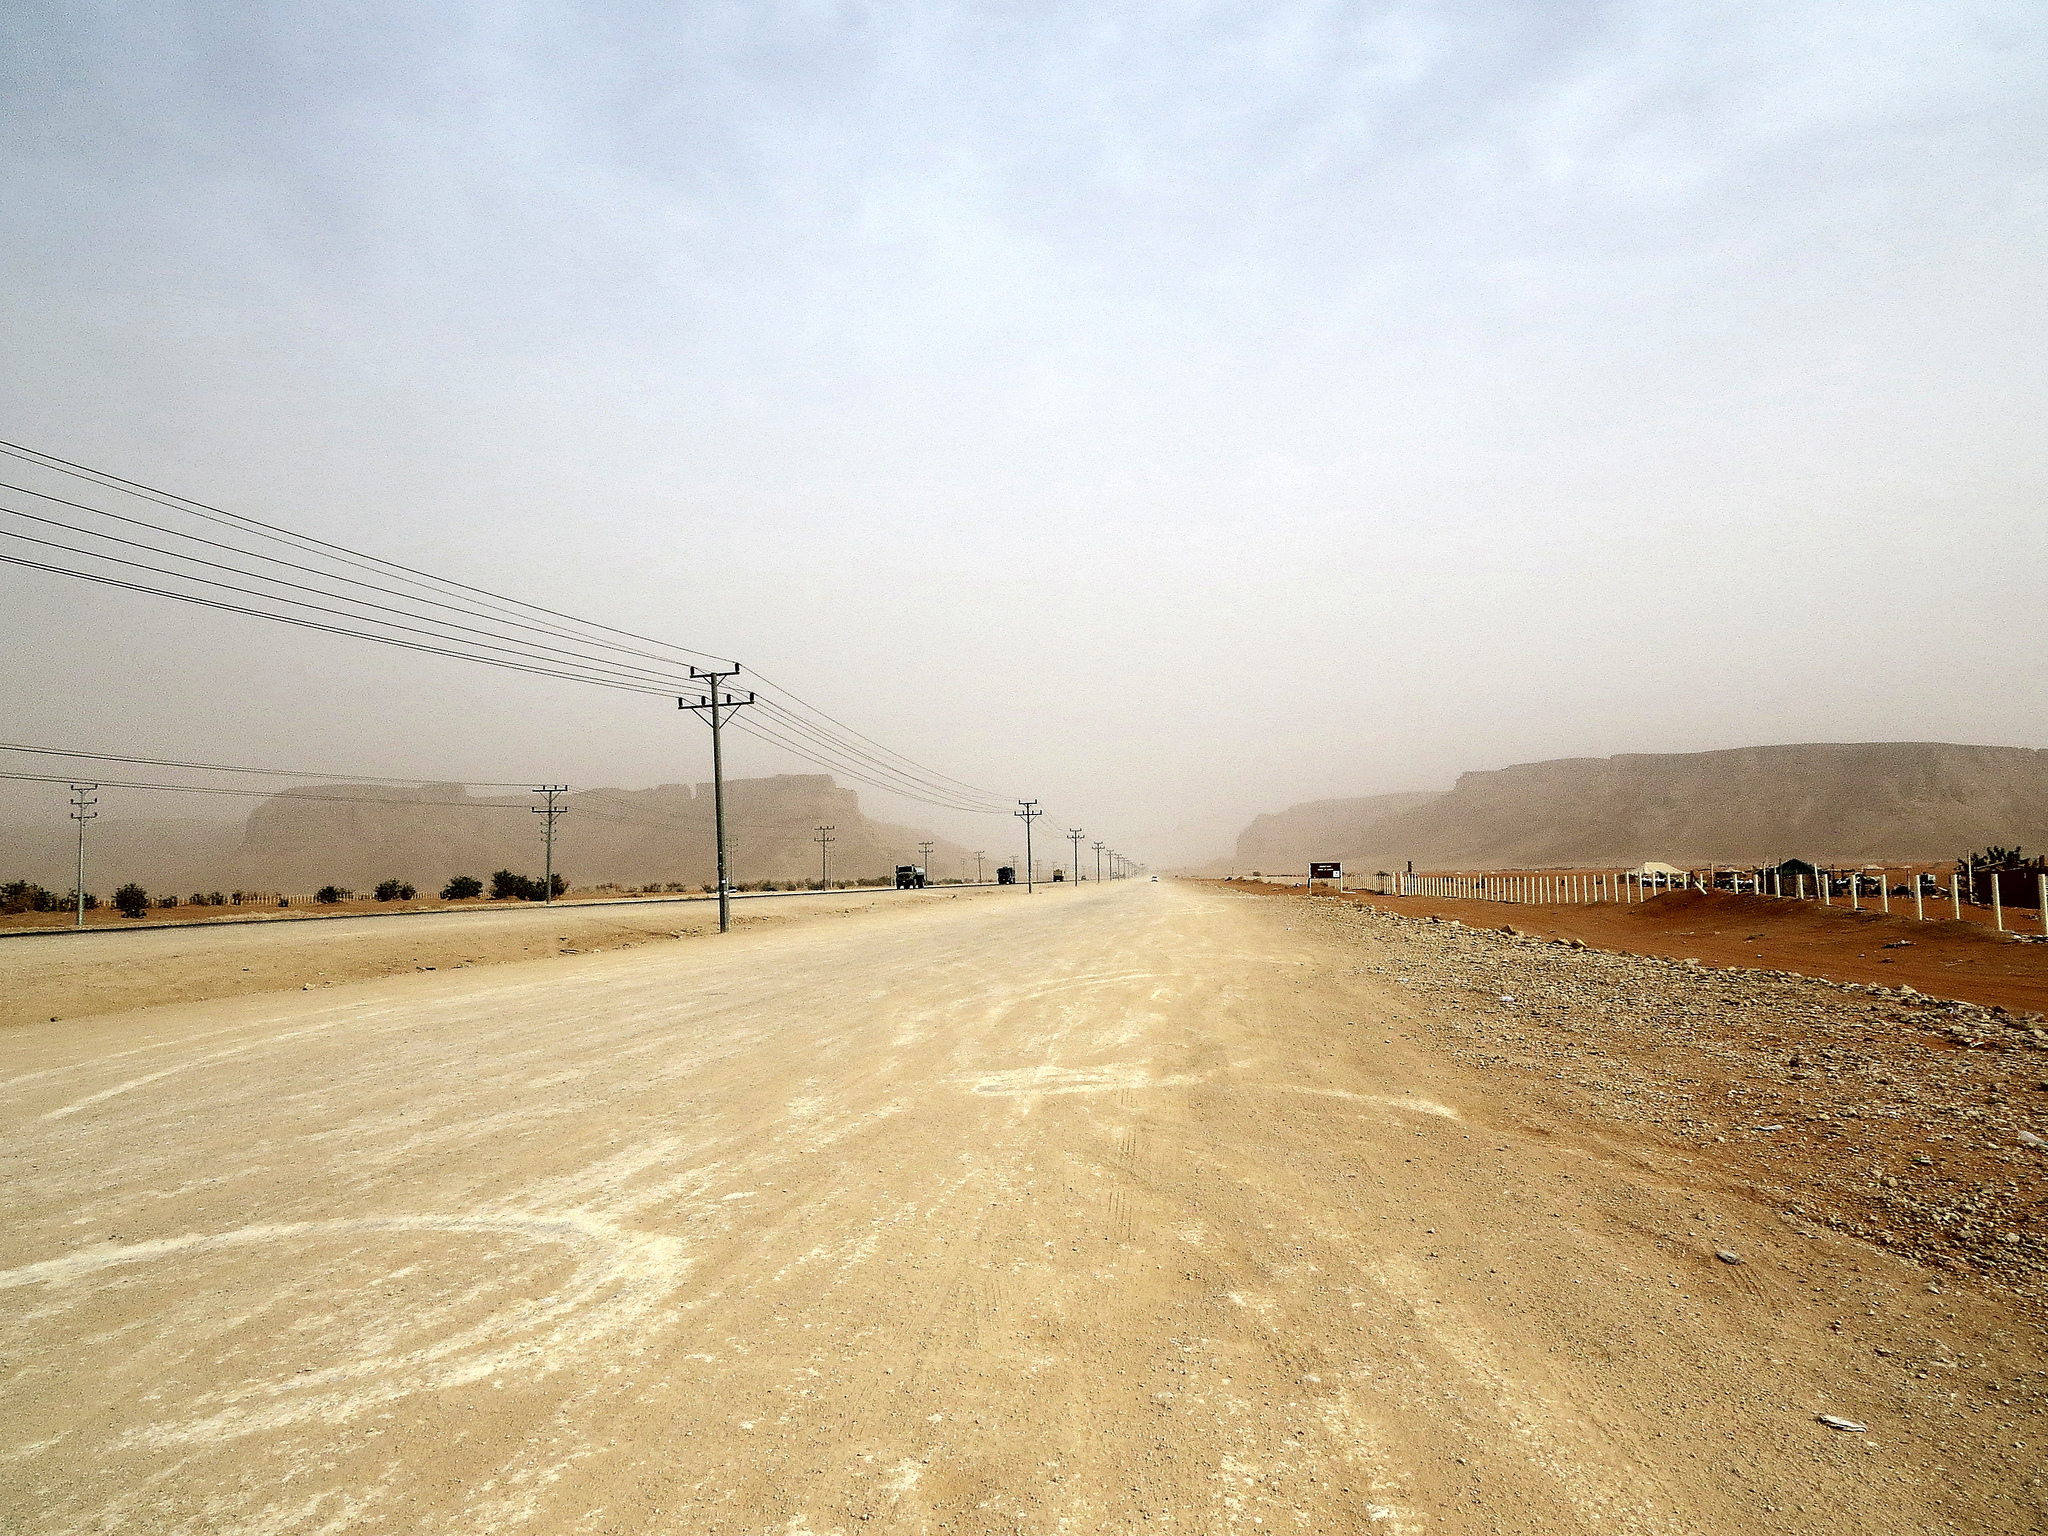 Photo taken in Saudi Arabia by Flickr user Edward Musiak on Jan 13 2013. CC- BY.2.0